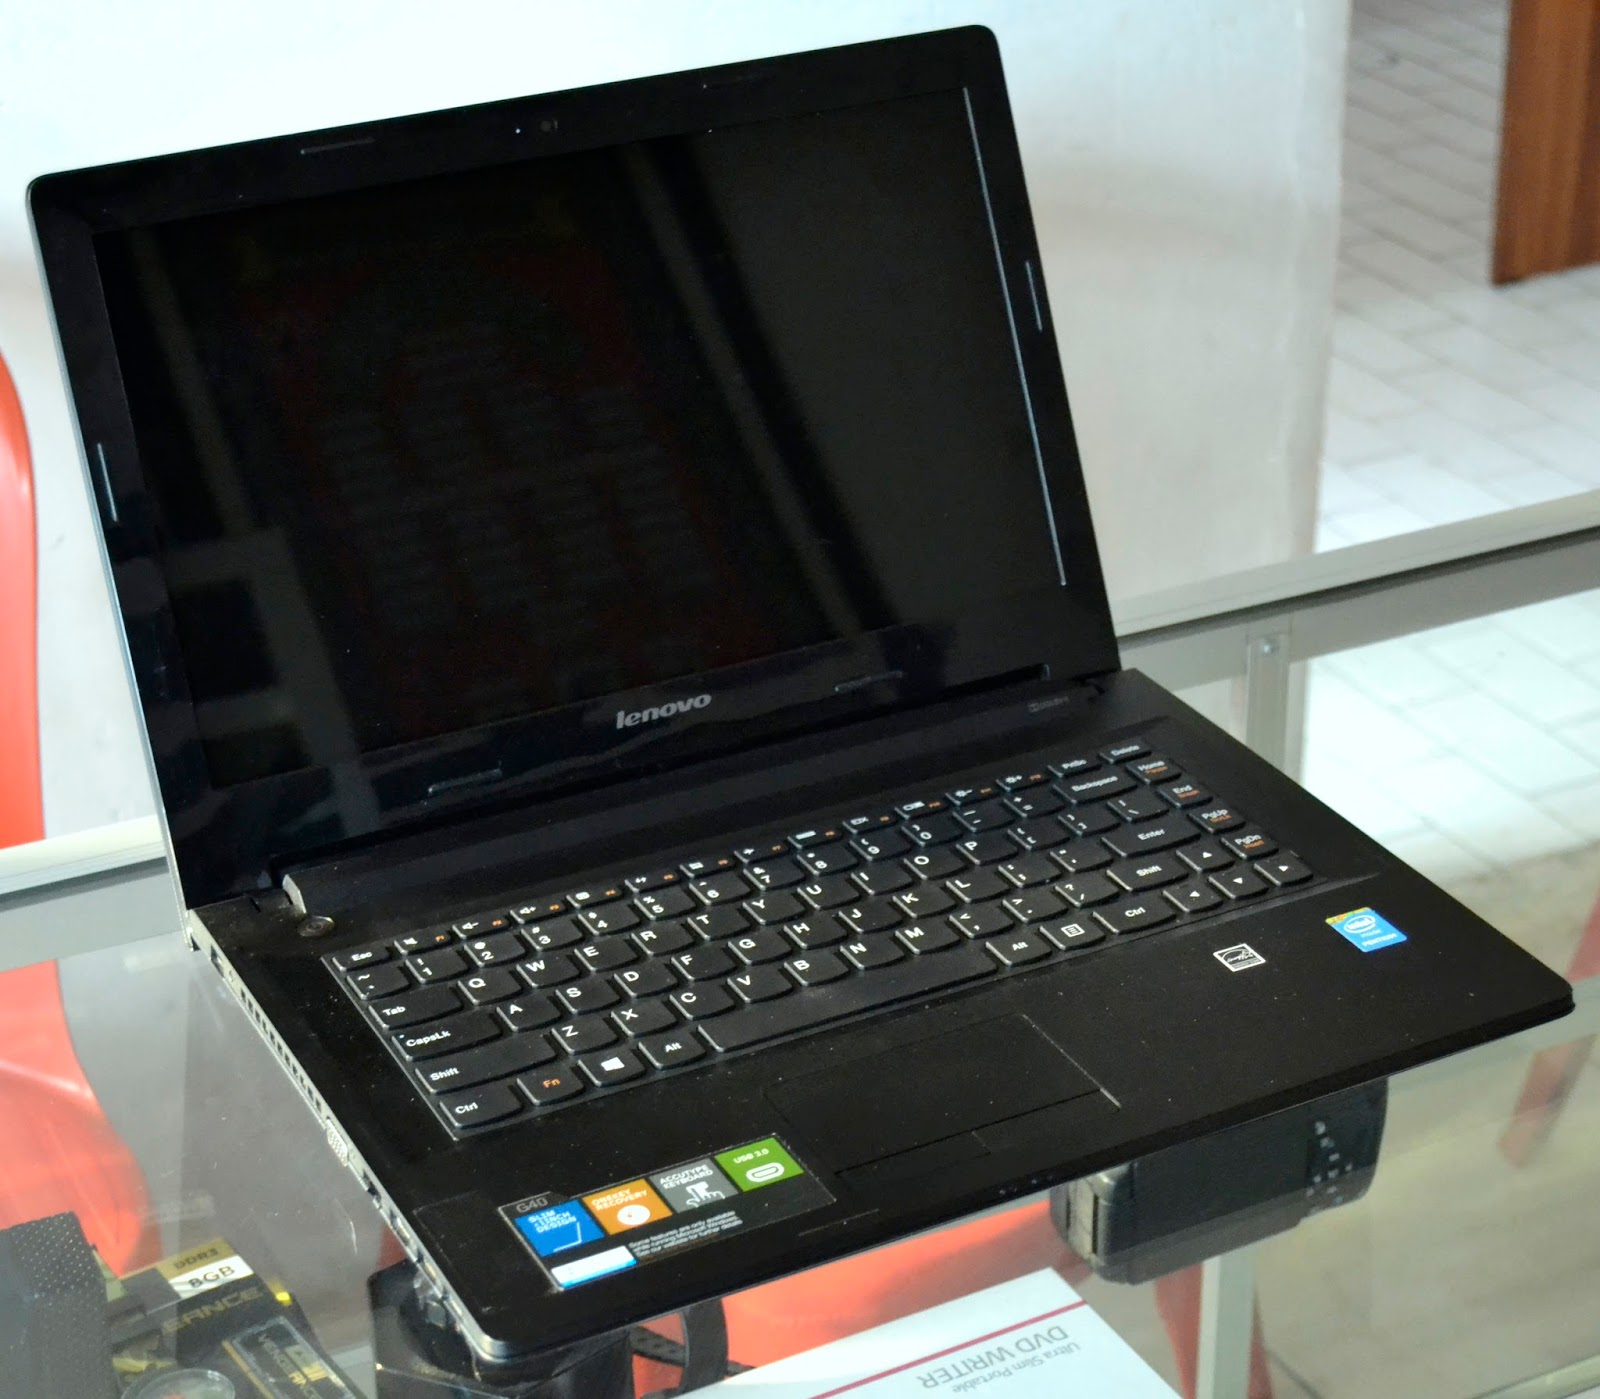 Jual Laptop Lenovo G40-30 Di Malang | Jual Beli Laptop